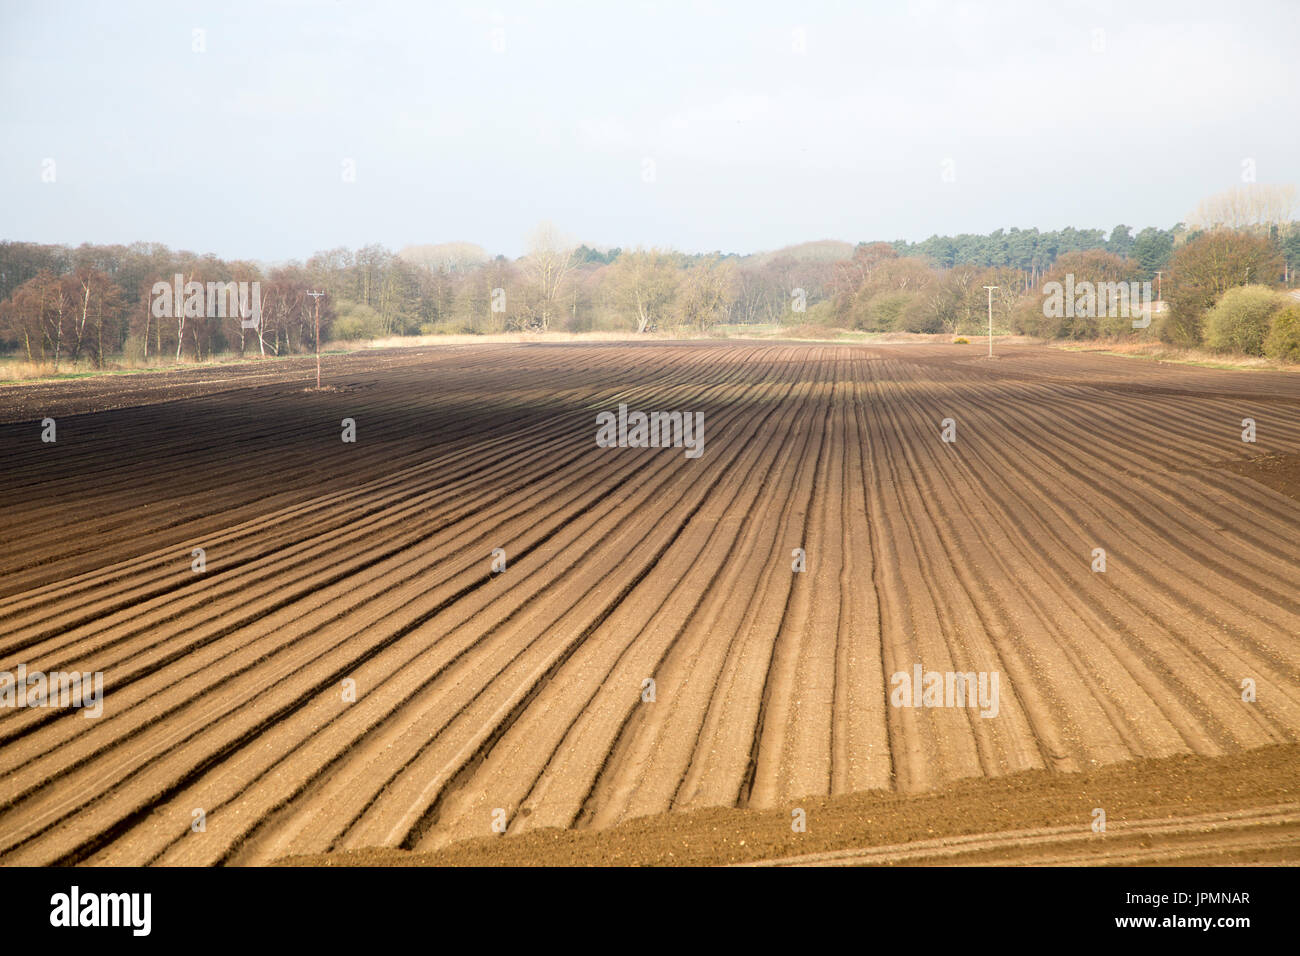 Rows made in sandy soil in field, Suffolk Sandlings landscape, Butley, Suffolk, England, UK Stock Photo